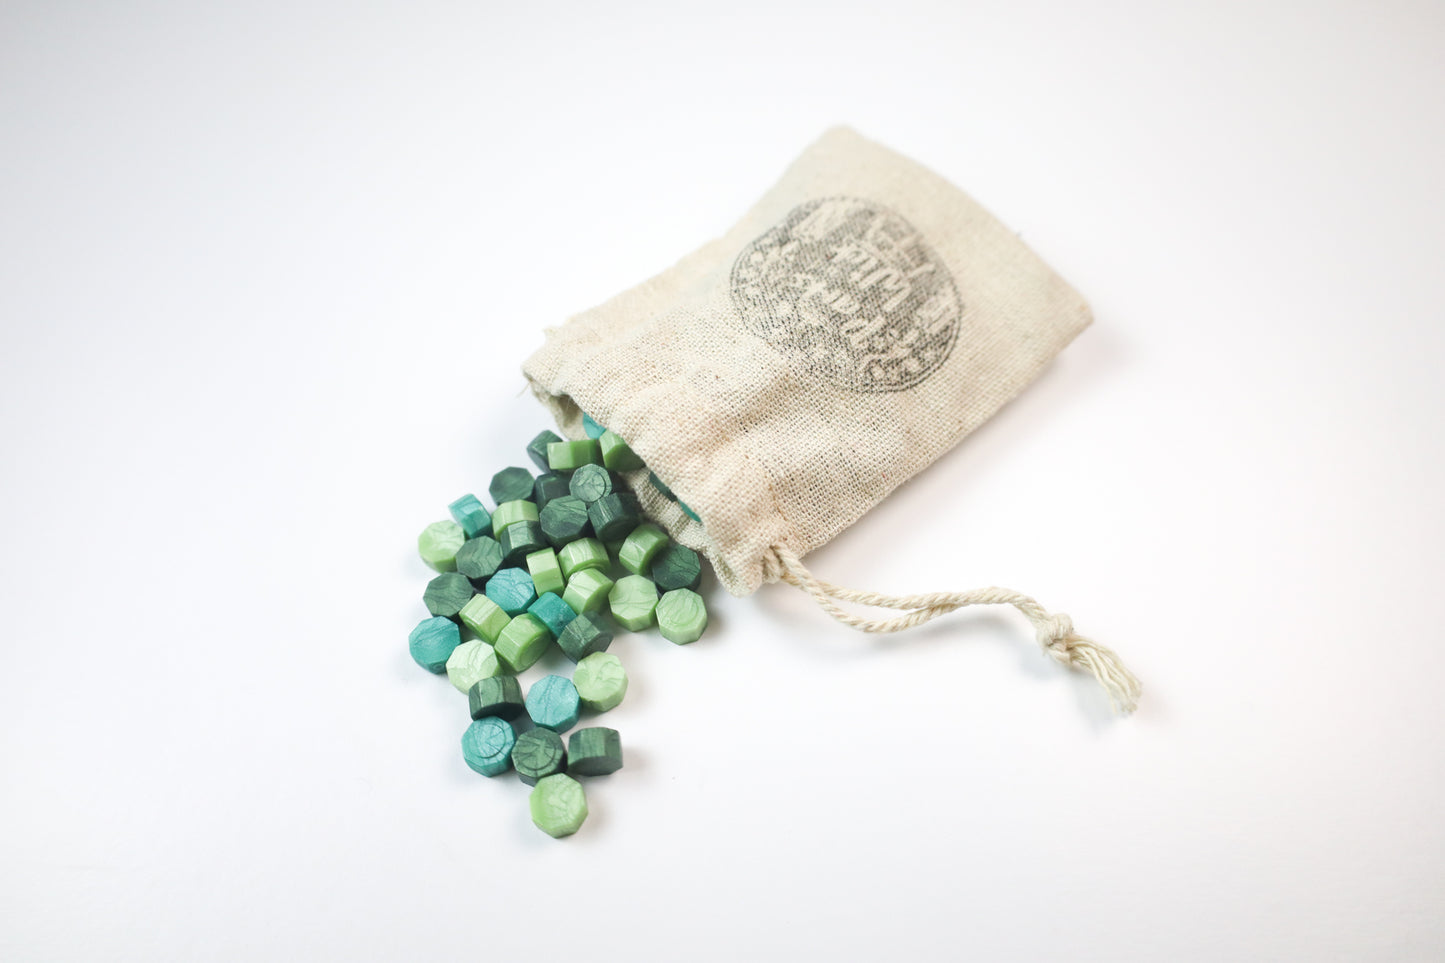 Metallic Green Wax Seal Beads